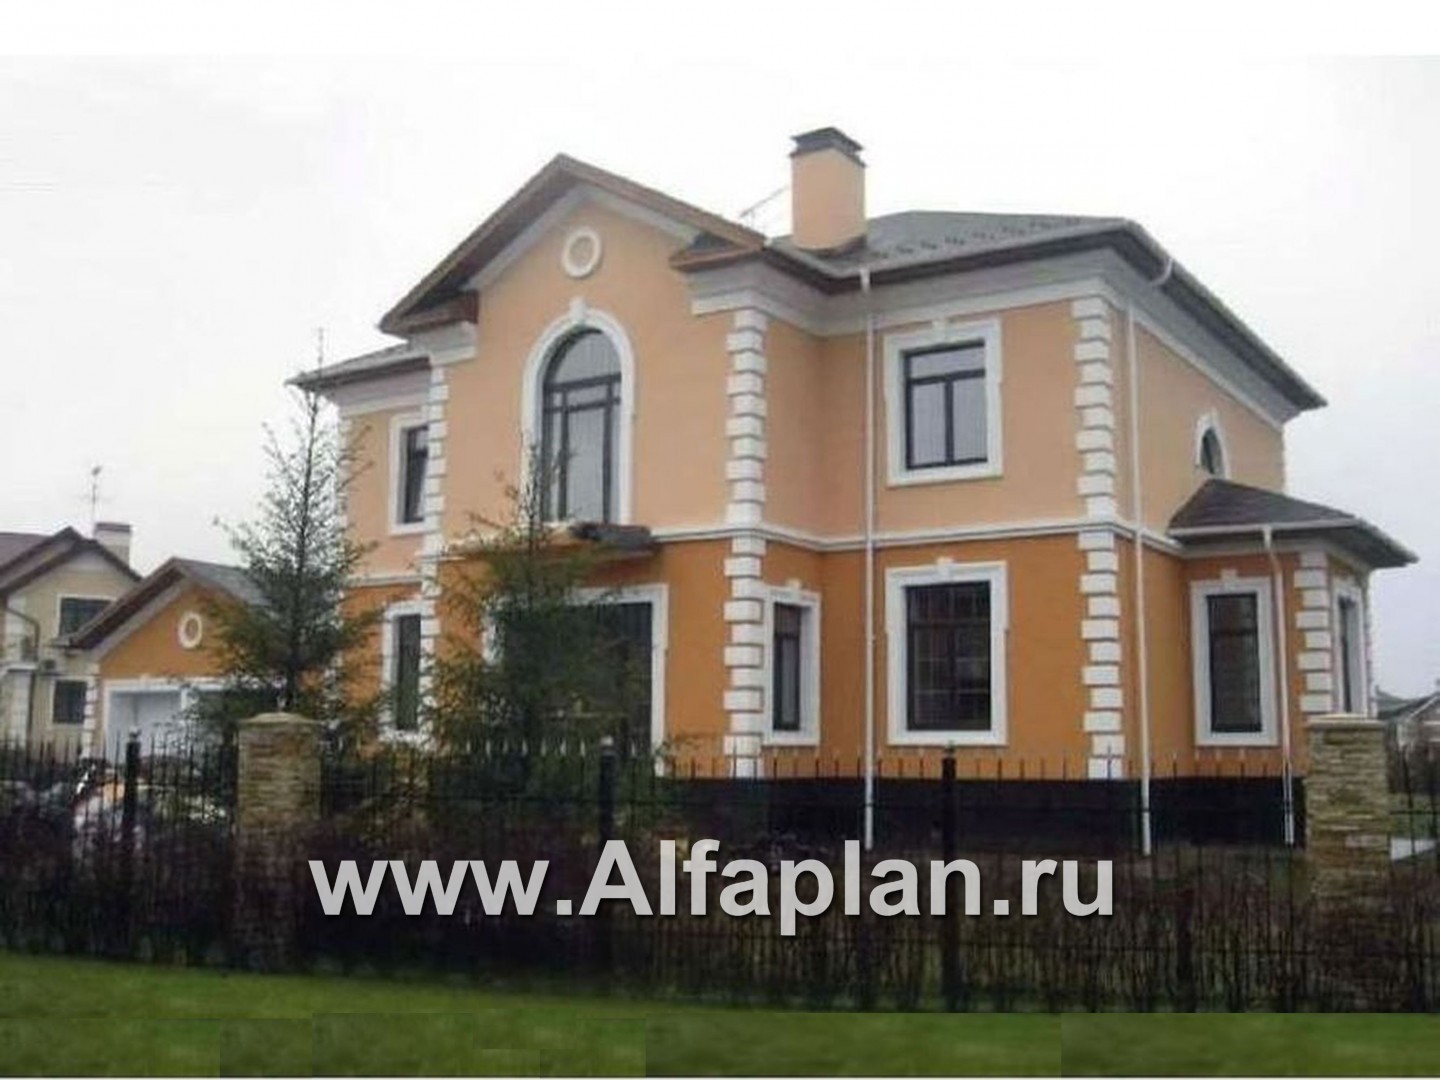 Проекты домов Альфаплан - Двухэтажный коттедж в стиле «Петровское барокко» - дополнительное изображение №2